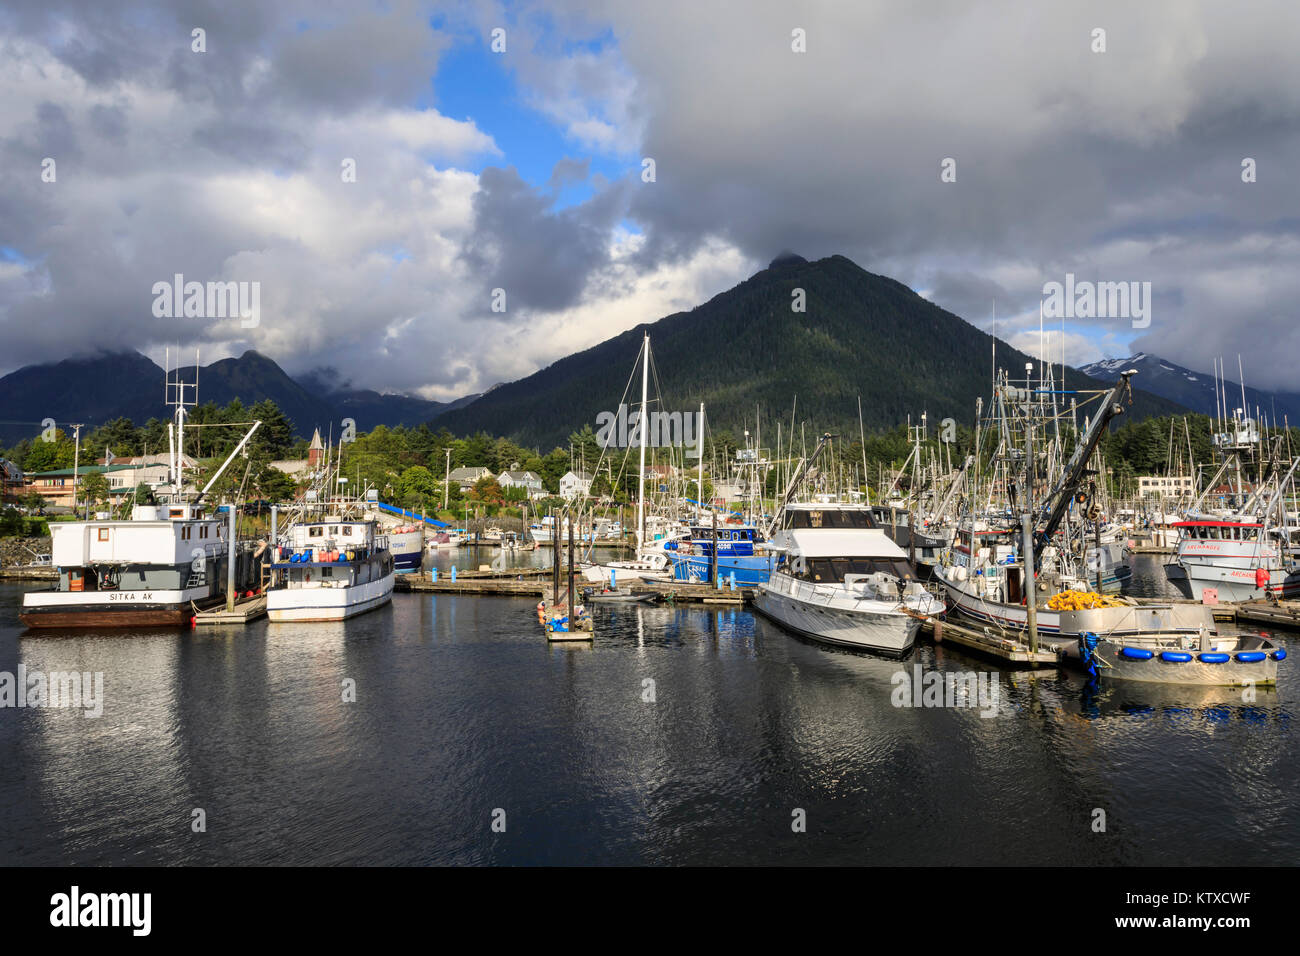 Crescent Boat Harbor con hermosas montañas boscosas y de la localidad de Sitka, raros días soleados, verano, Baranof Island, Alaska, Estados Unidos de América, ni Foto de stock